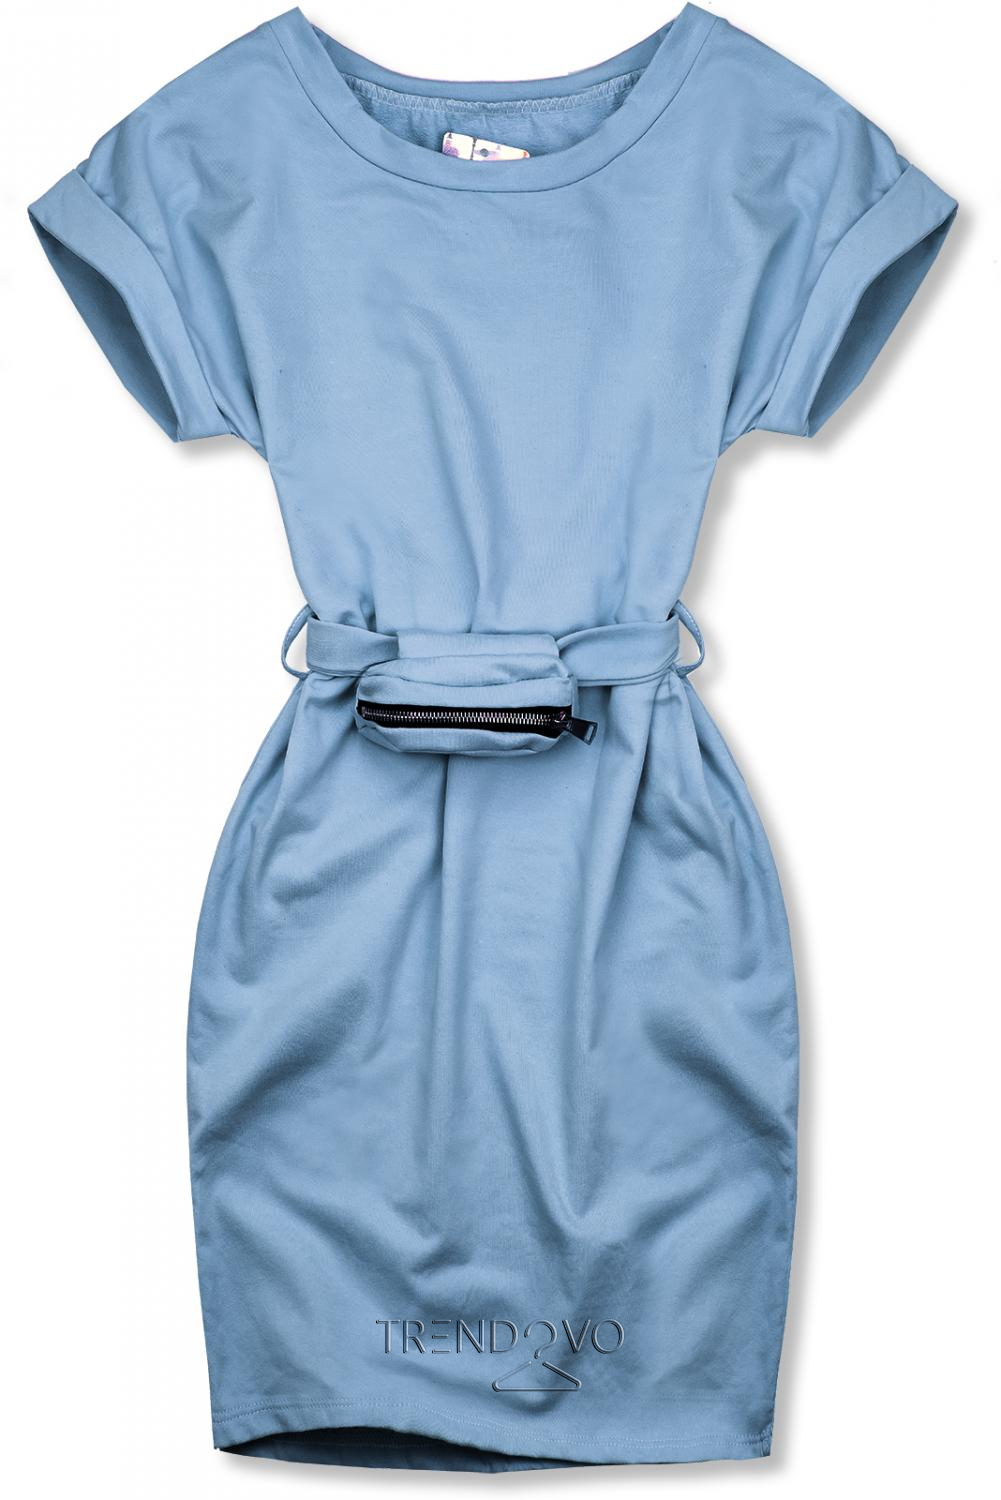 Baby blue basic šaty s malou taškou v pase